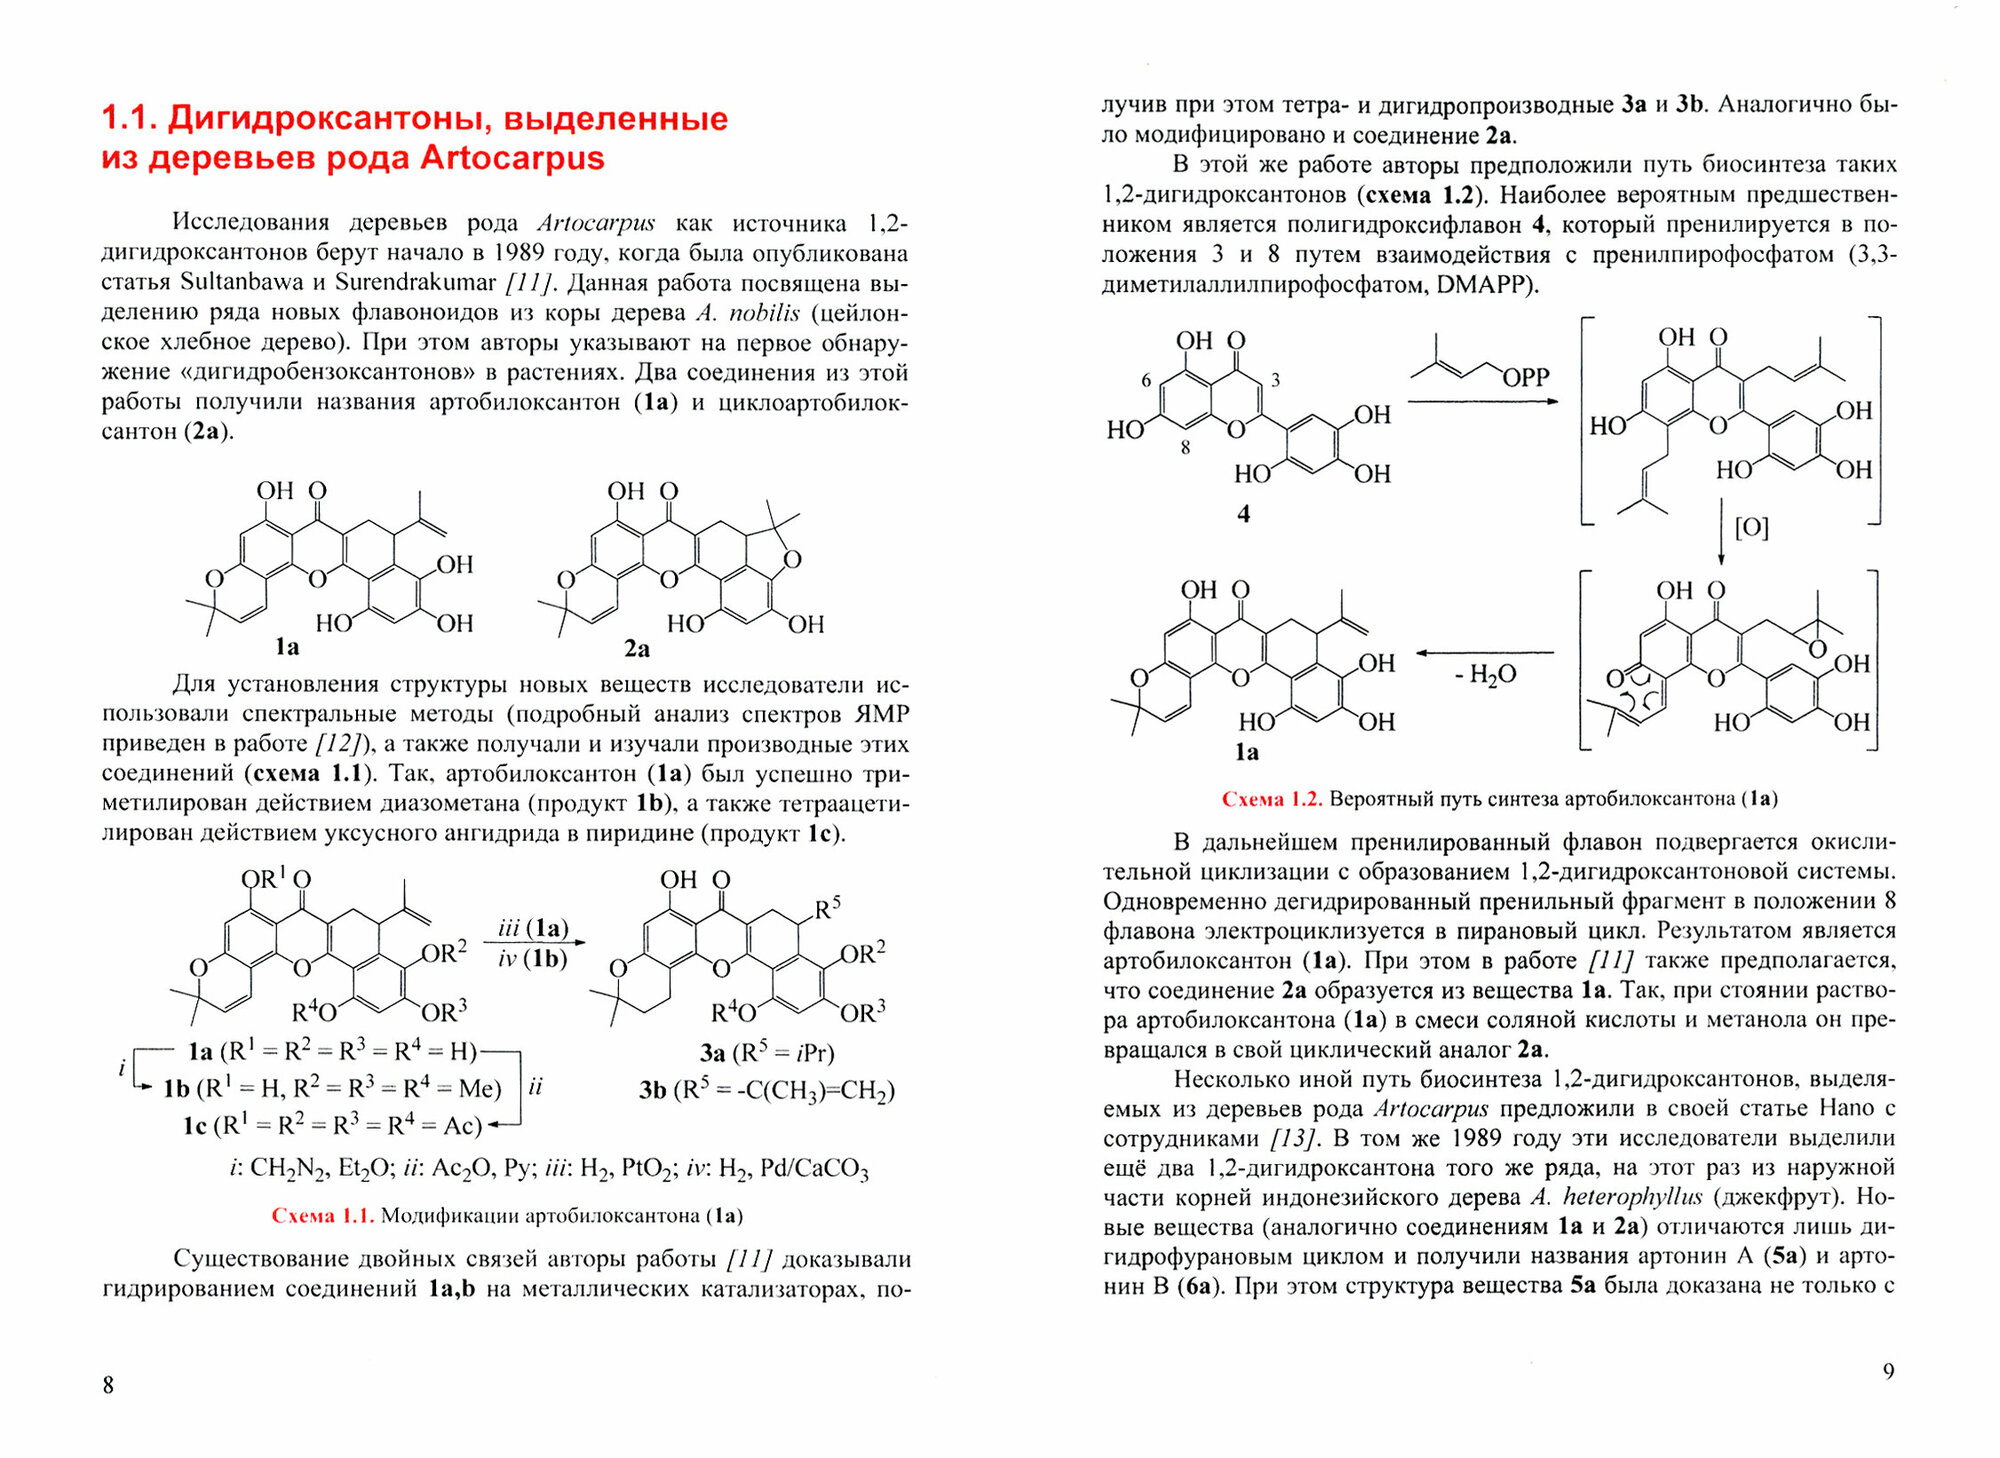 Дигидроксантоны. Химия и биологическая активность - фото №3